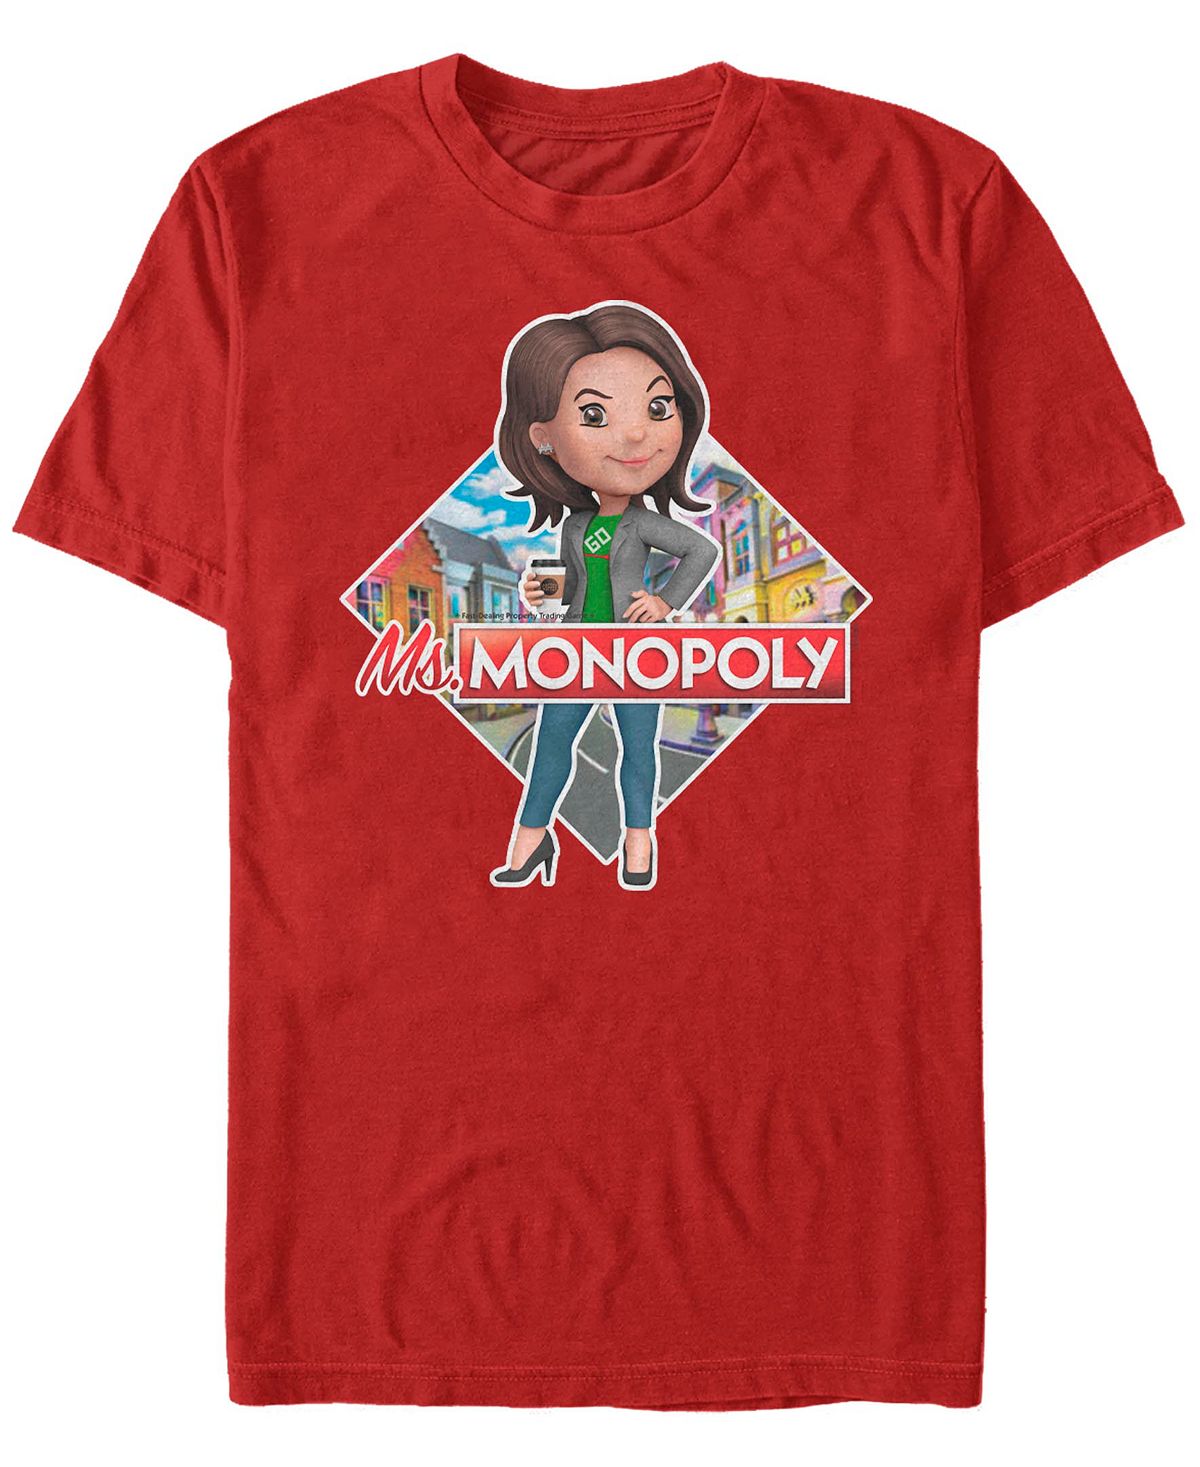 Мужская футболка с коротким рукавом с логотипом monopoly ms monopoly Fifth Sun, красный мужская футболка с коротким рукавом в рождественском стиле monopoly fifth sun синий